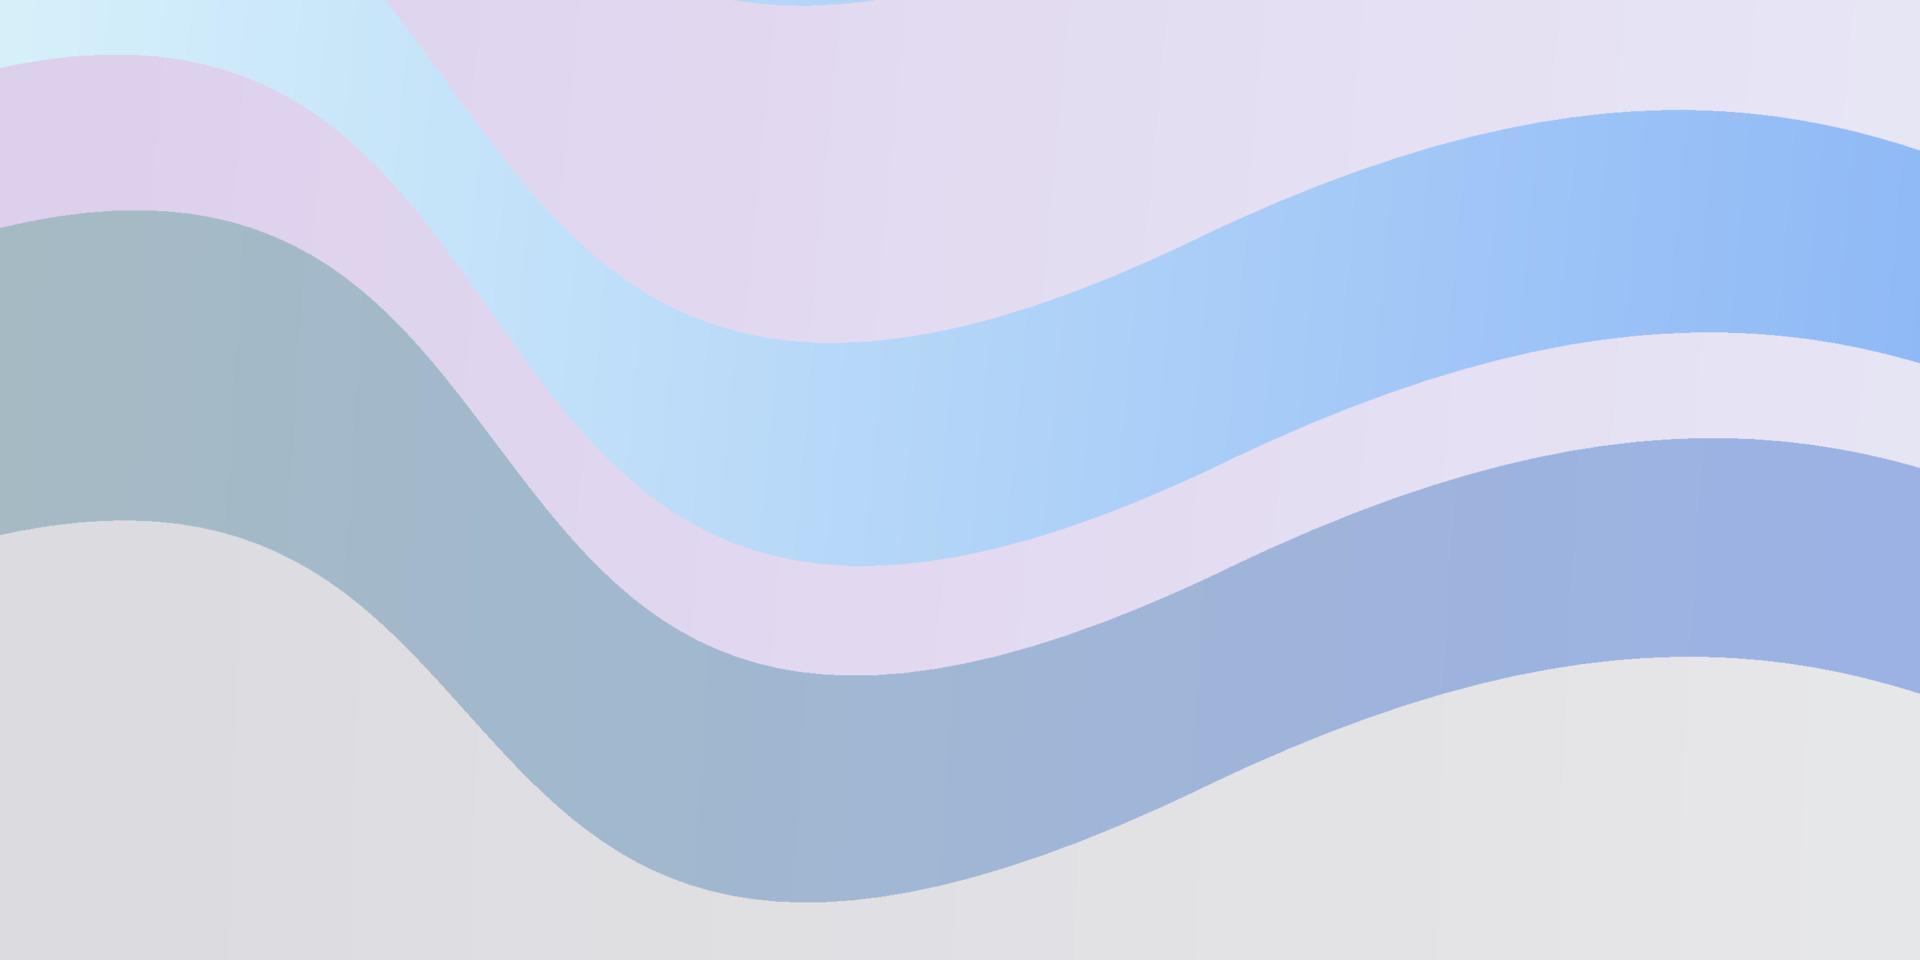 Fondo de vector rosa claro, azul con curvas.